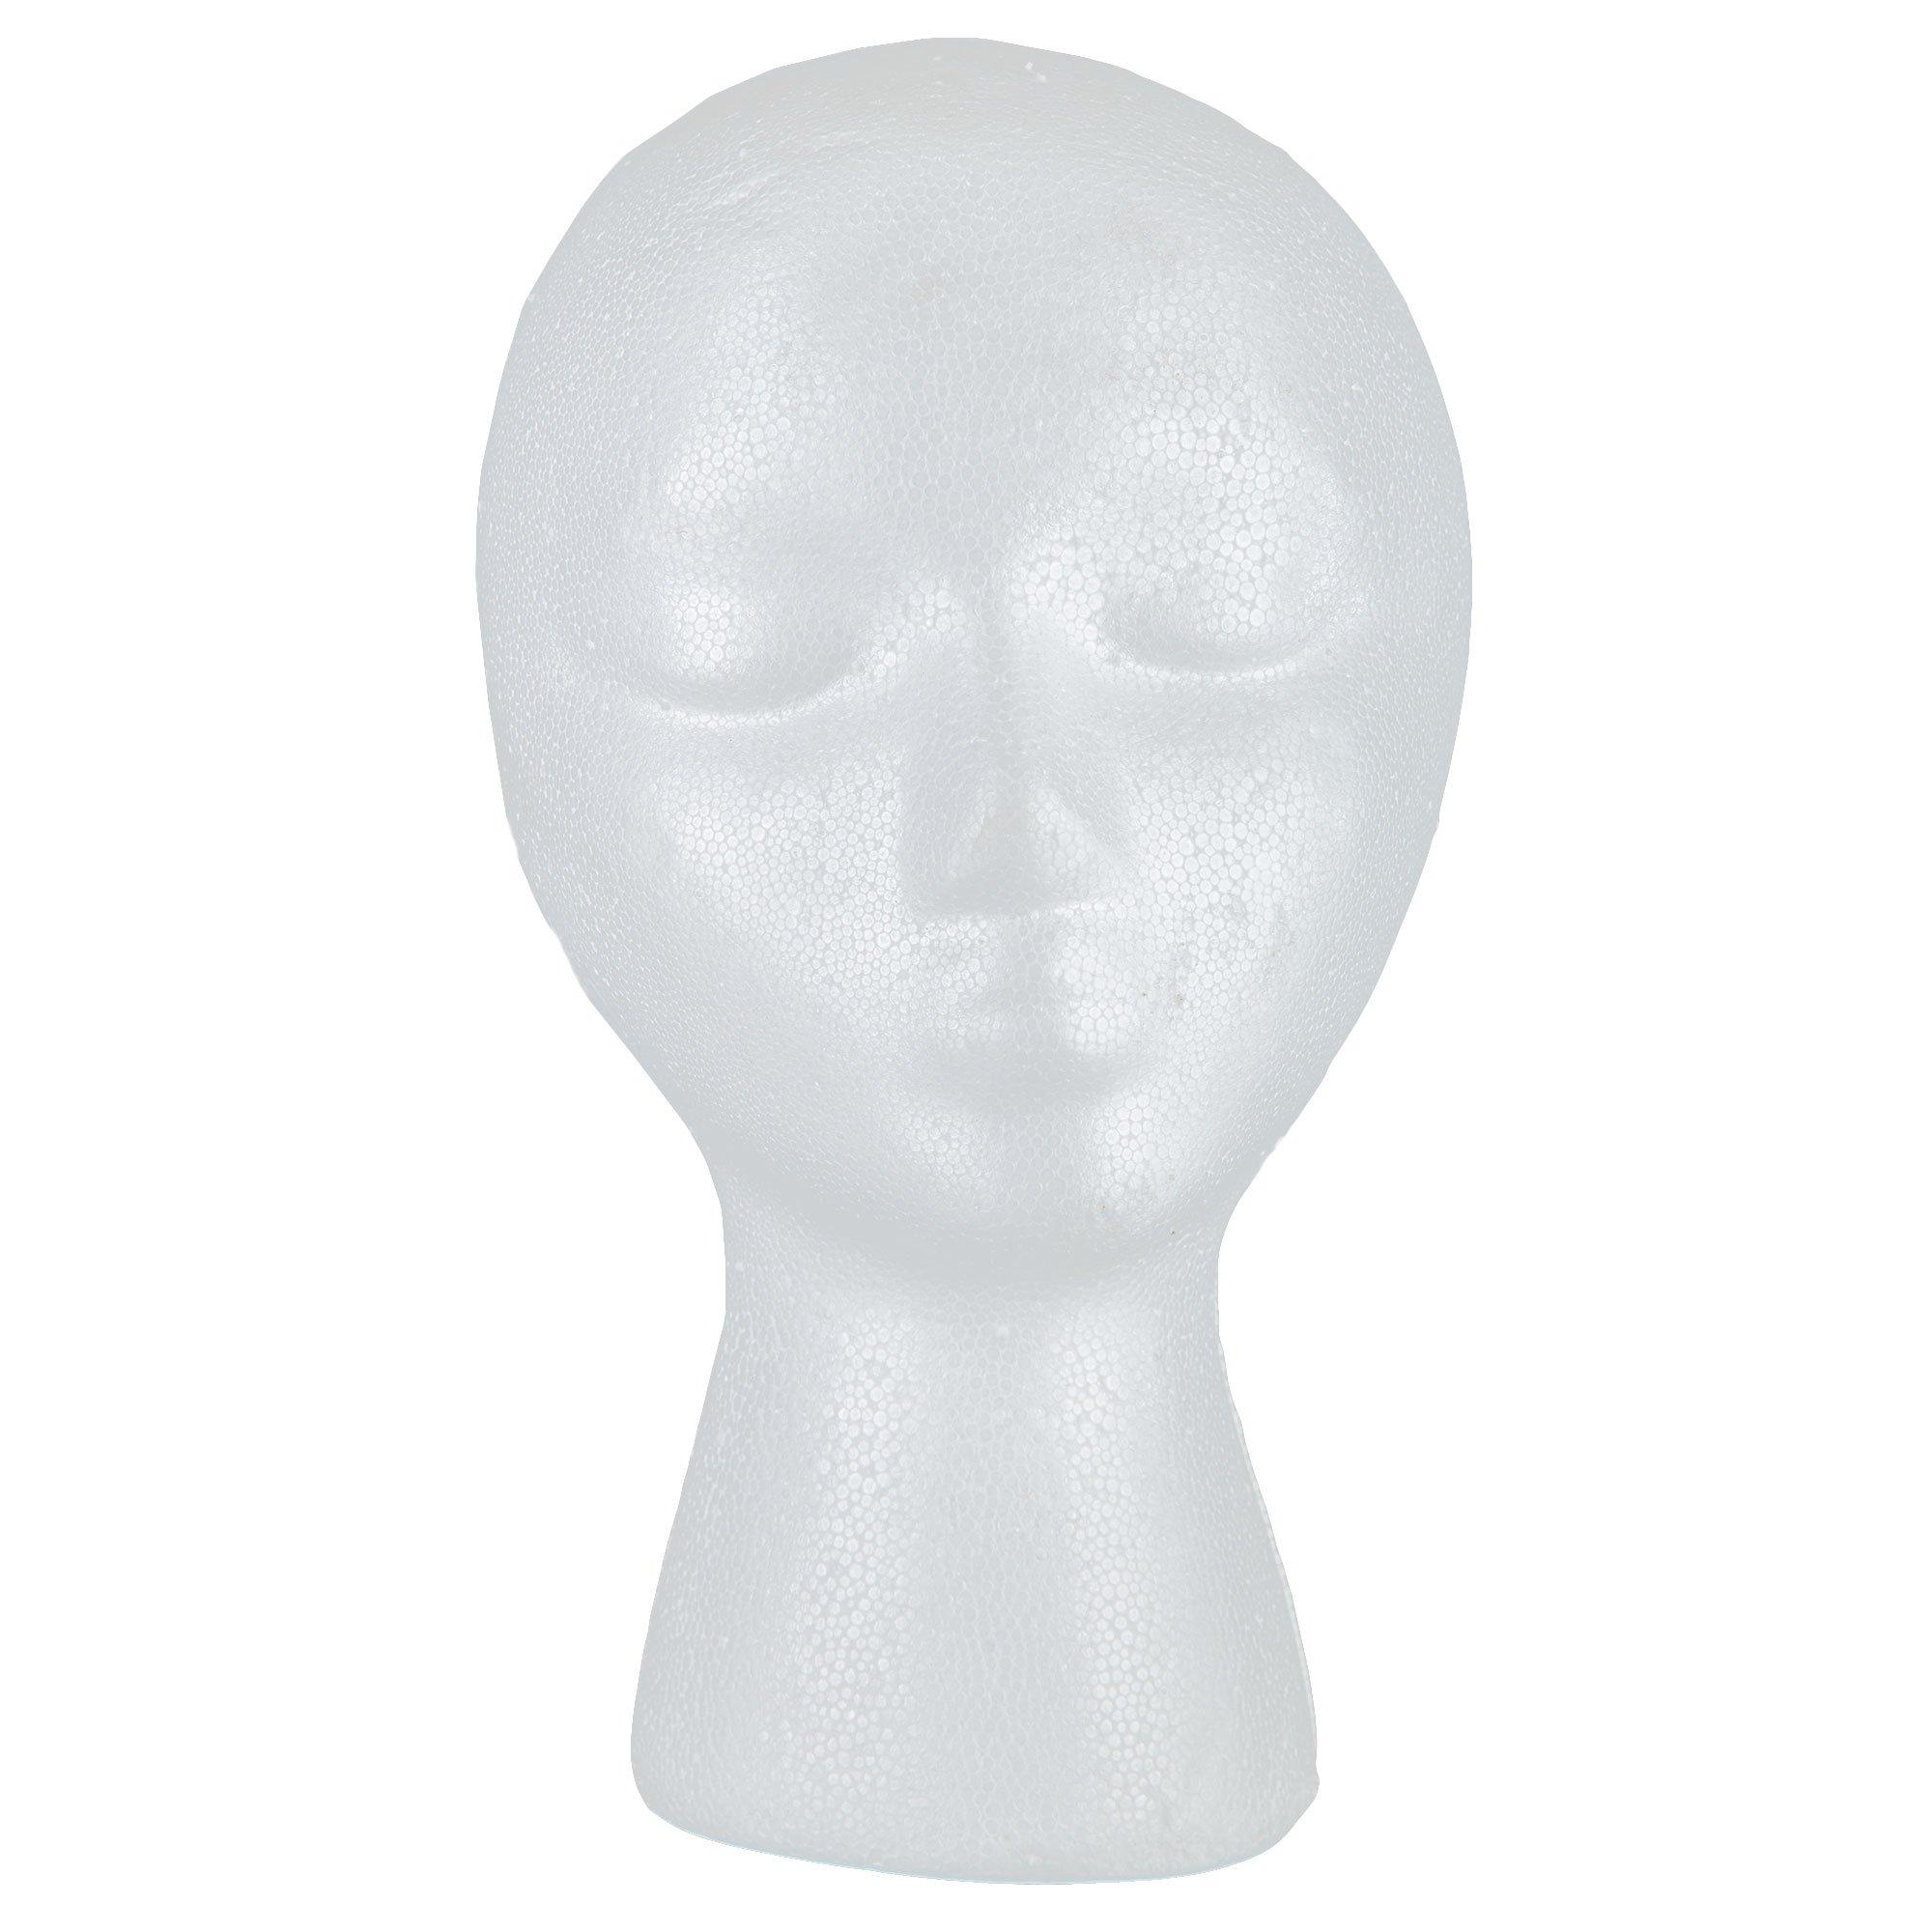 Female styrofoam mannequin head